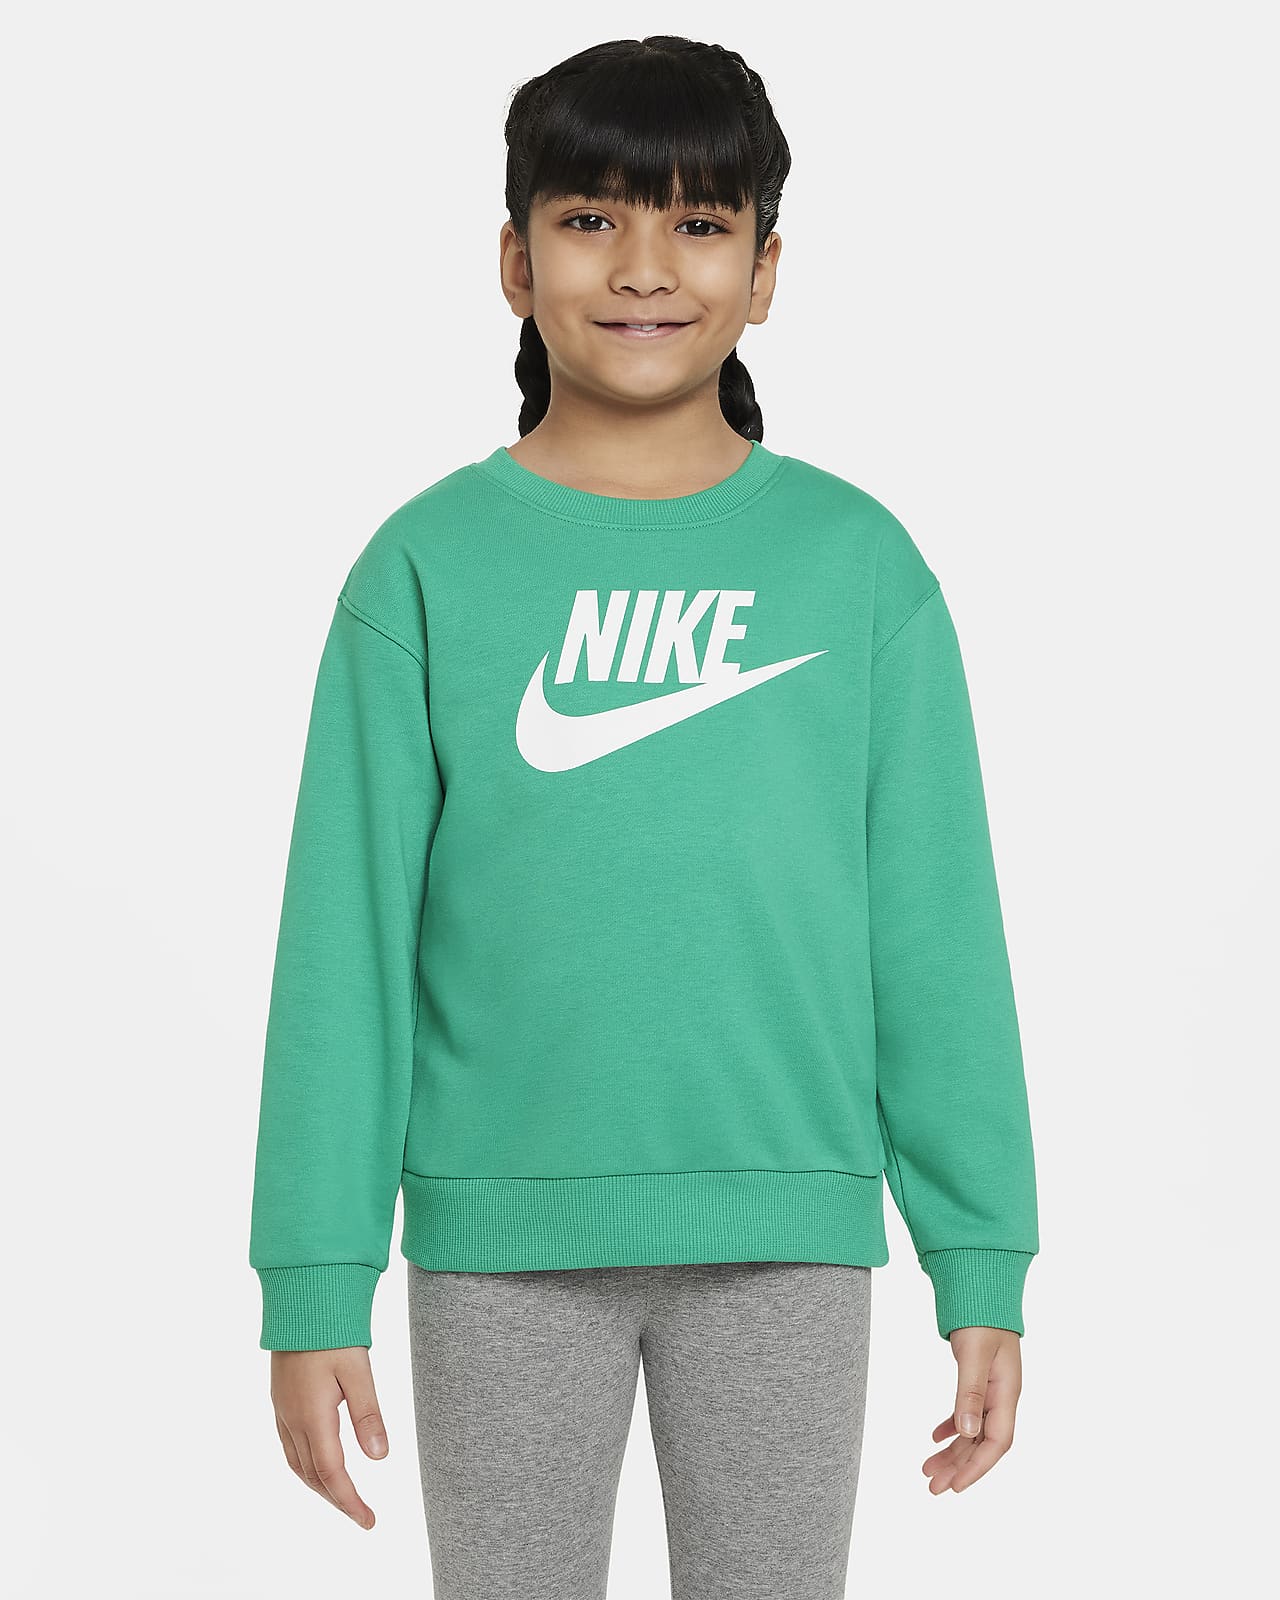 Nike 幼童法式毛圈圆领上衣